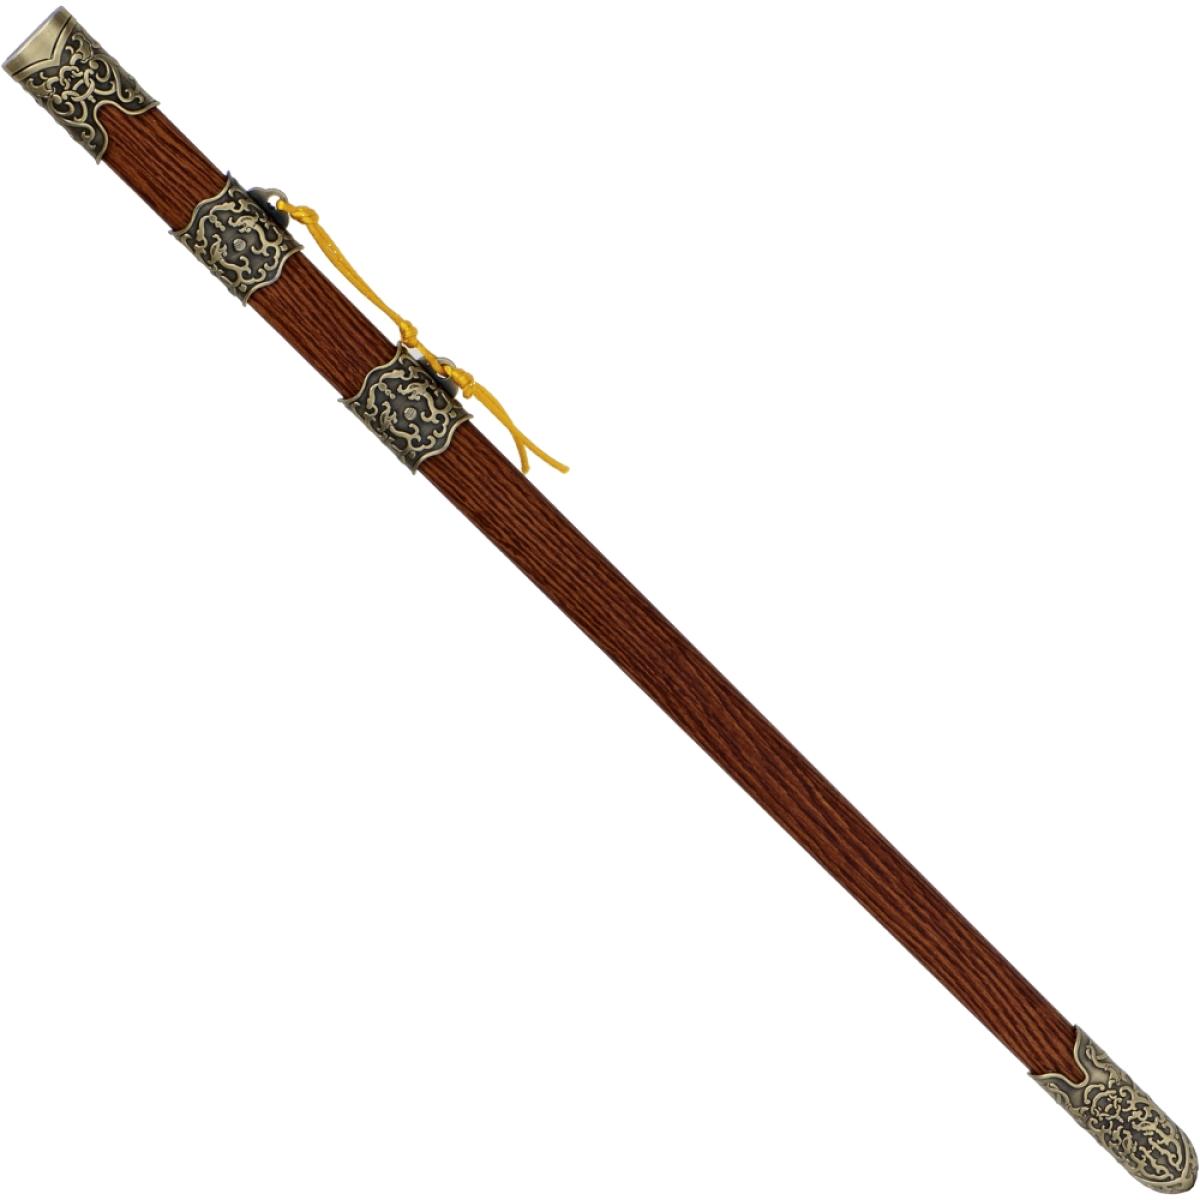 WunderschönesTai Chi Schwert mit Stahlklinge♥ besonders edle Schwertscheide ✅Übungswaffe für Dein Tai-Chi-Training✅ Waffen für Tai Chi✓ Tai Chi Chuan✓ Taichi✓ günstig kaufen✓ jetzt online bestellen➽ www.bokken-welt.de